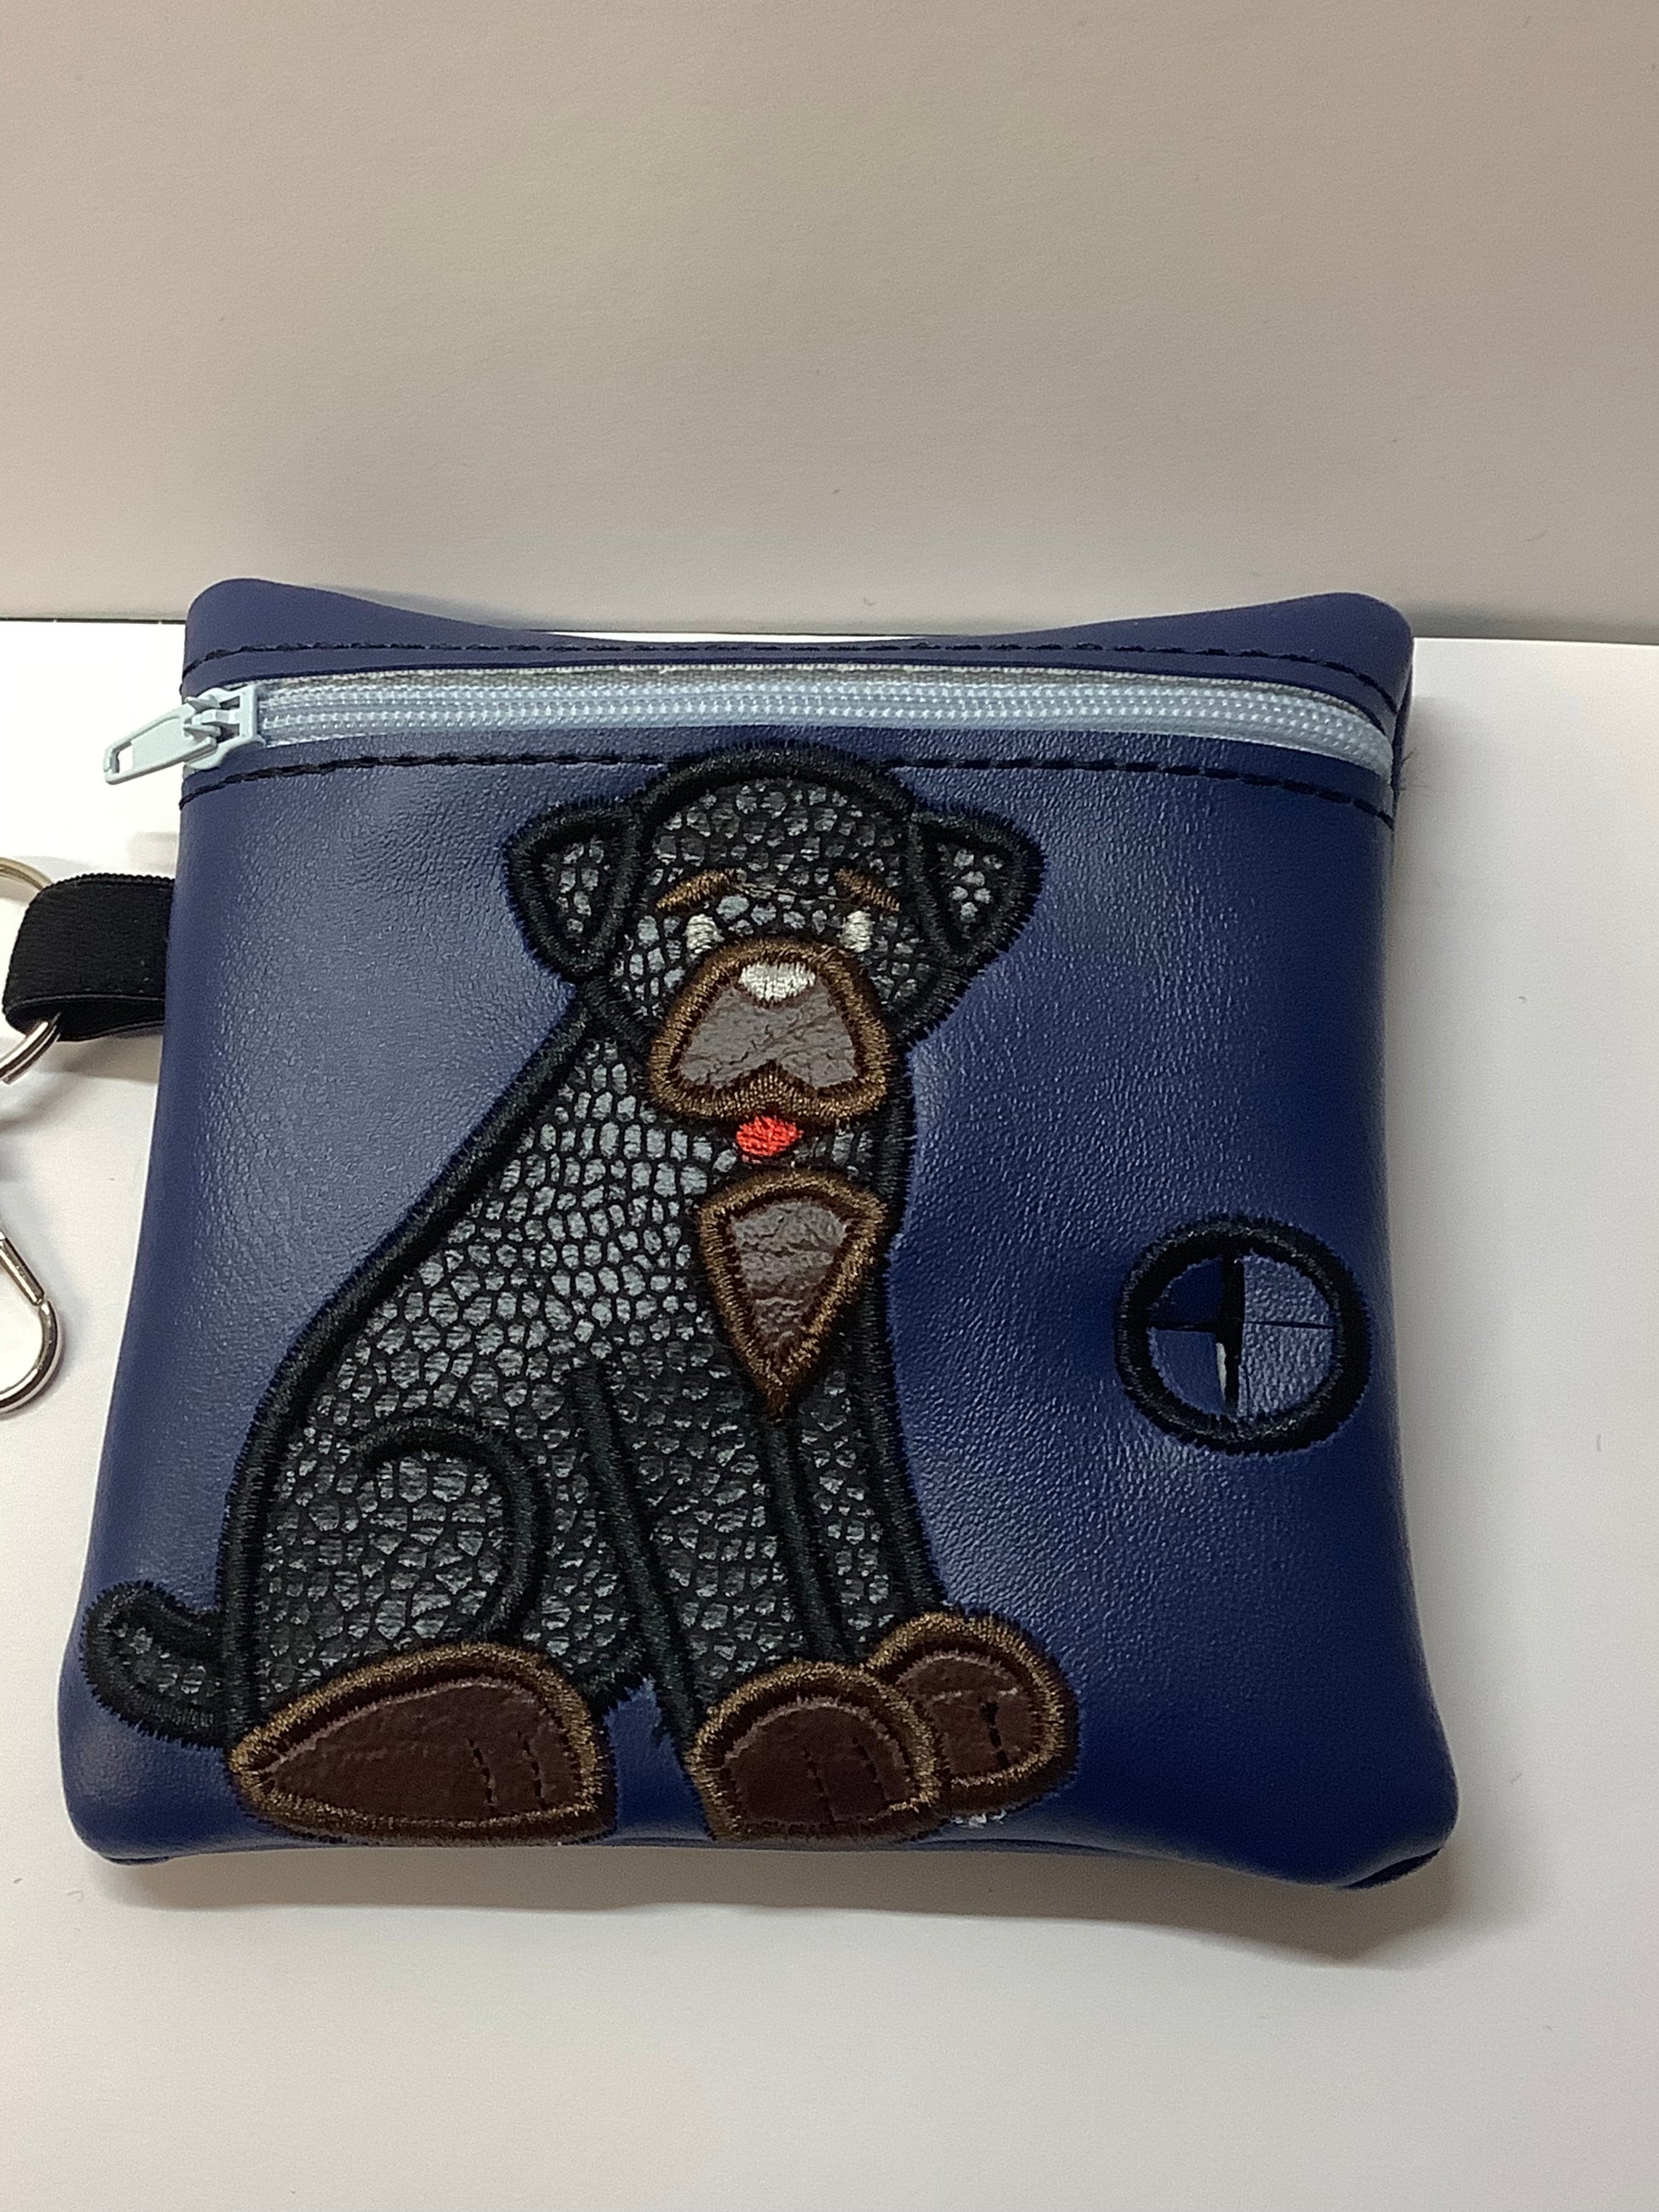 Rottweiler poo bag dispenser on Blue Embroidered Bag